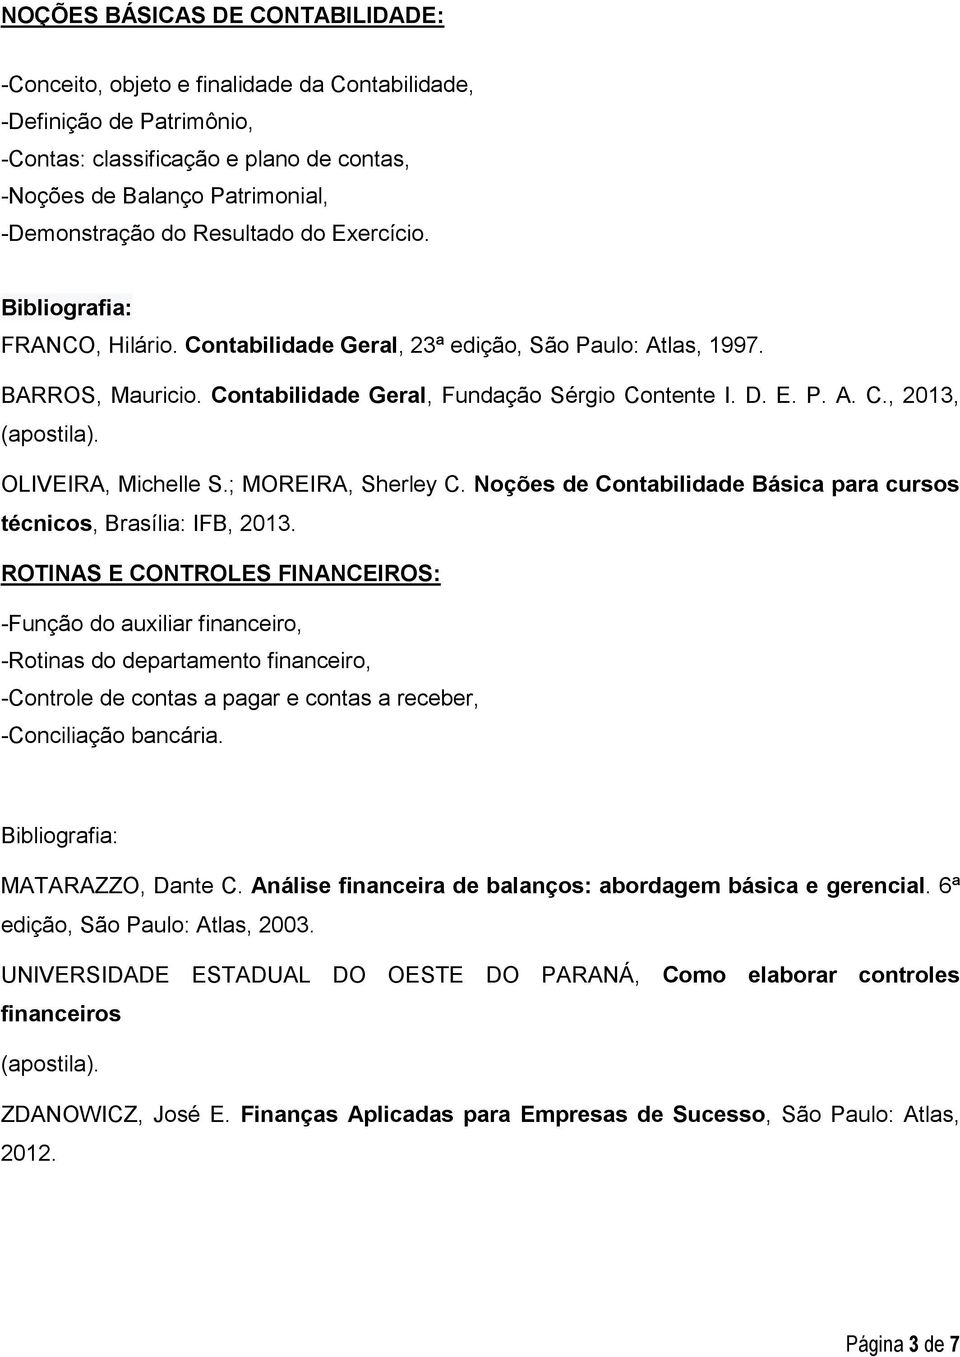 OLIVEIRA, Michelle S.; MOREIRA, Sherley C. Noções de Contabilidade Básica para cursos técnicos, Brasília: IFB, 2013.